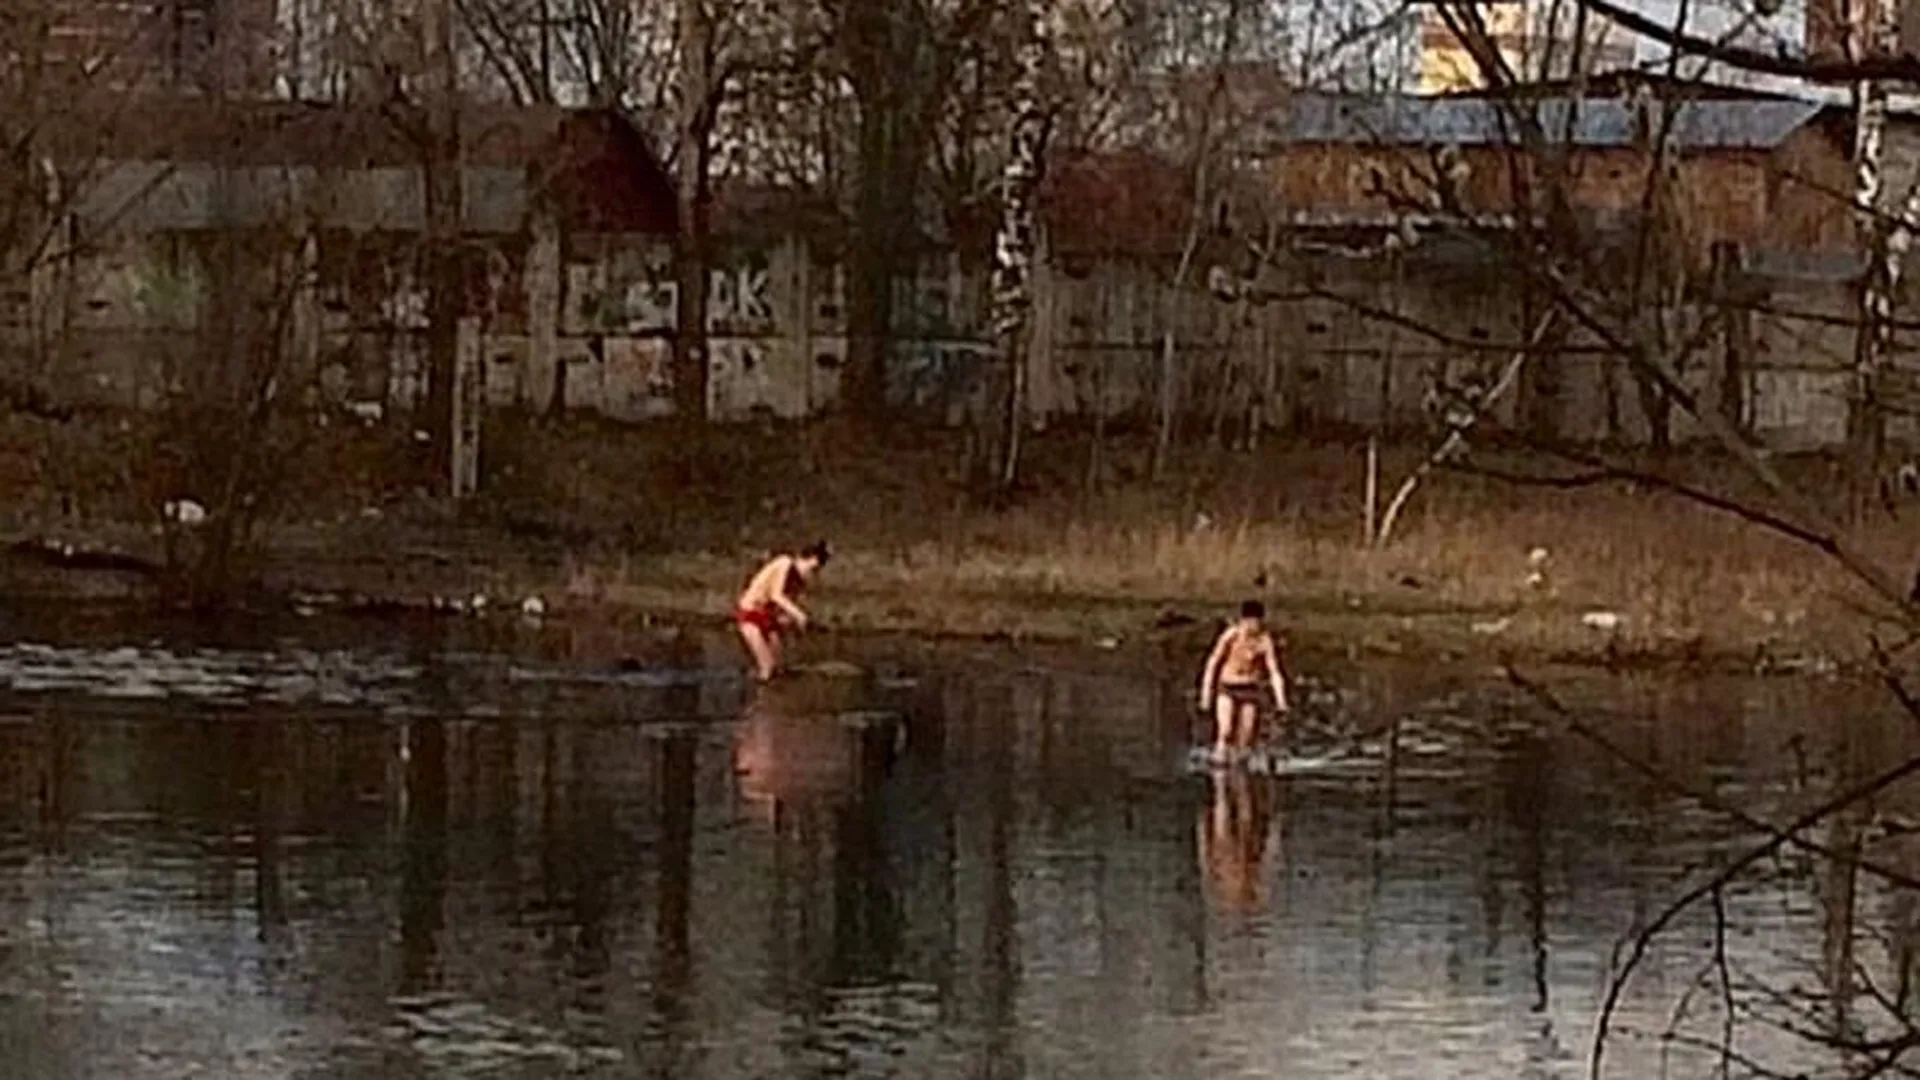 Открытие купального сезона в период самоизоляции может обойтись в копеечку жителям Одинцово